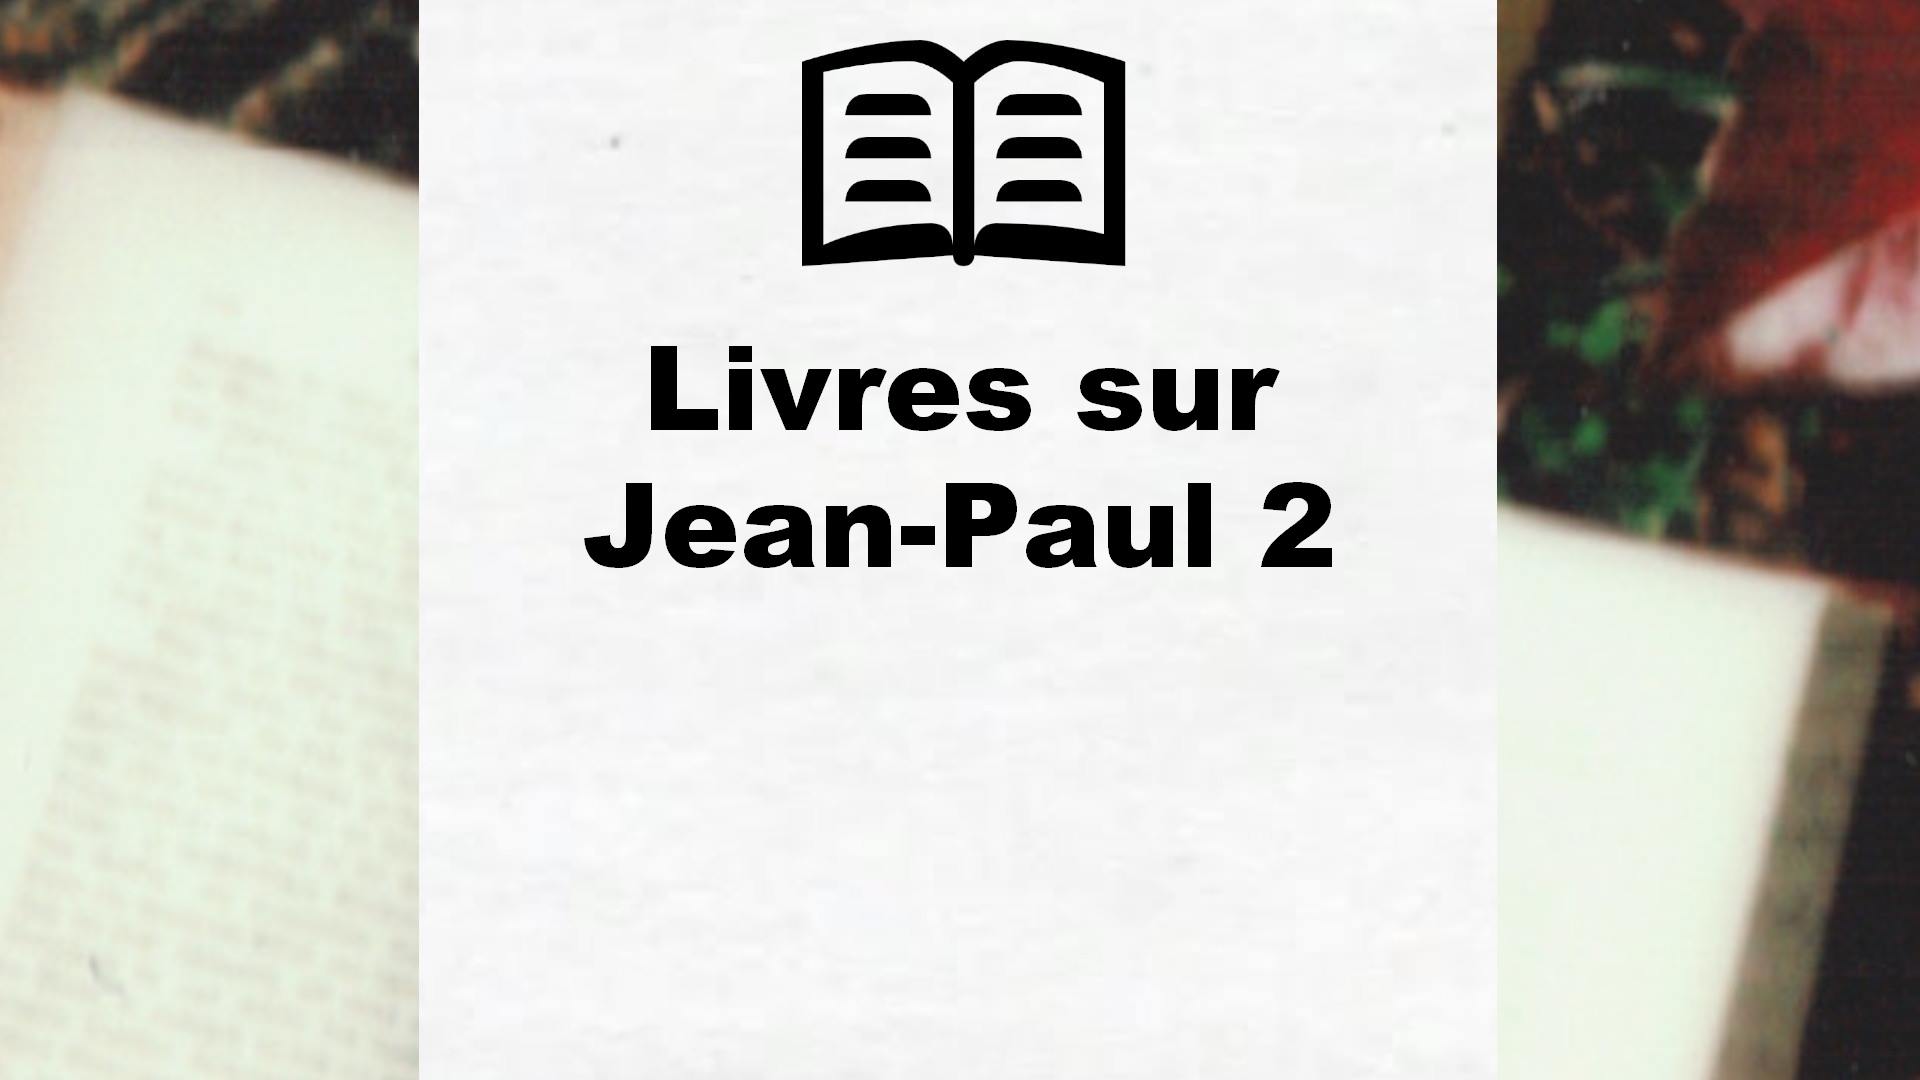 Livres sur Jean-Paul 2